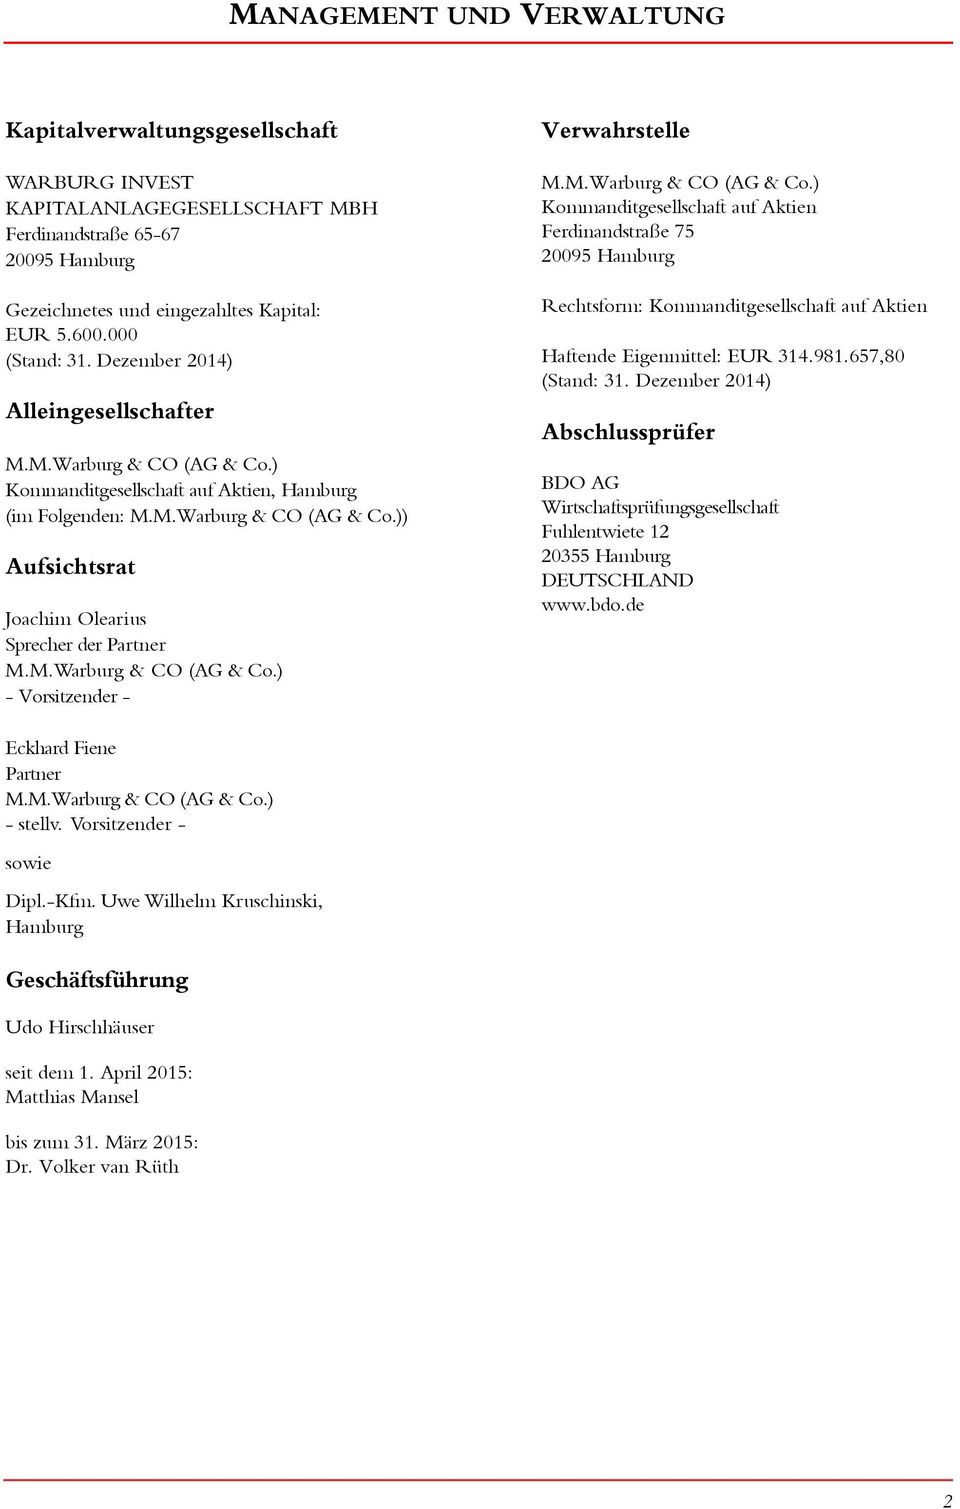 M.Warburg & CO (AG & Co.) - Vorsitzender - Verwahrstelle M.M.Warburg & CO (AG & Co.) Kommanditgesellschaft auf Aktien Ferdinandstraße 75 295 Hamburg Rechtsform: Kommanditgesellschaft auf Aktien Haftende Eigenmittel: EUR 314.